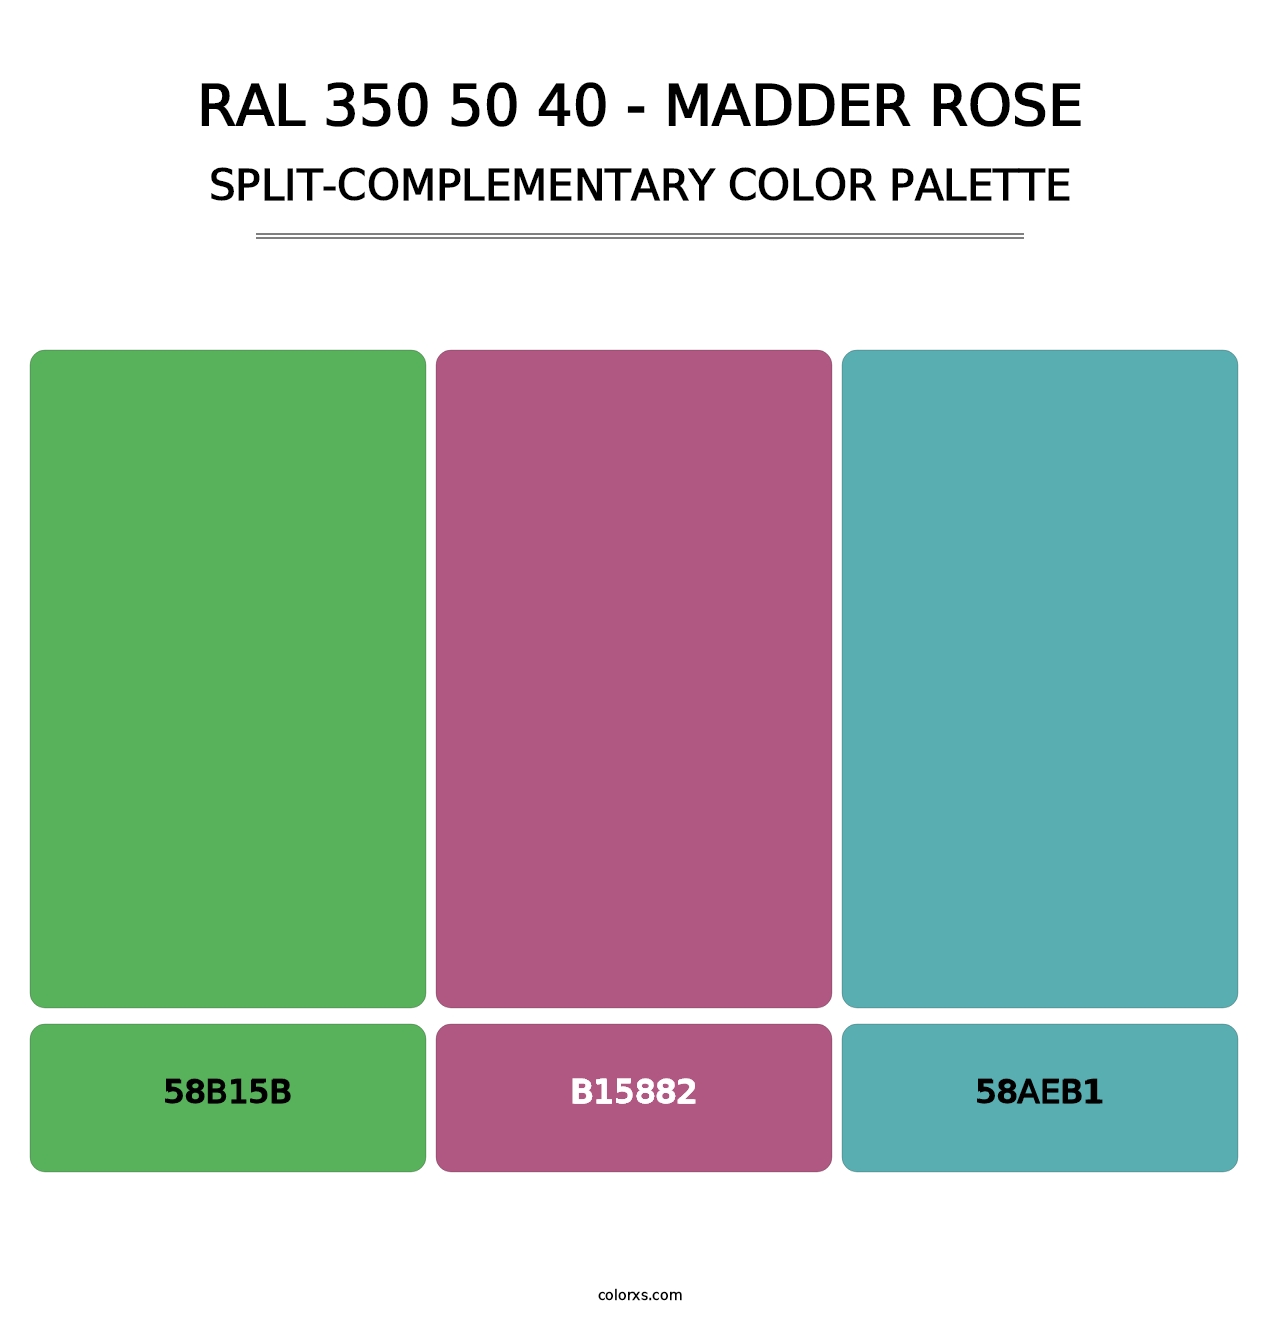 RAL 350 50 40 - Madder Rose - Split-Complementary Color Palette